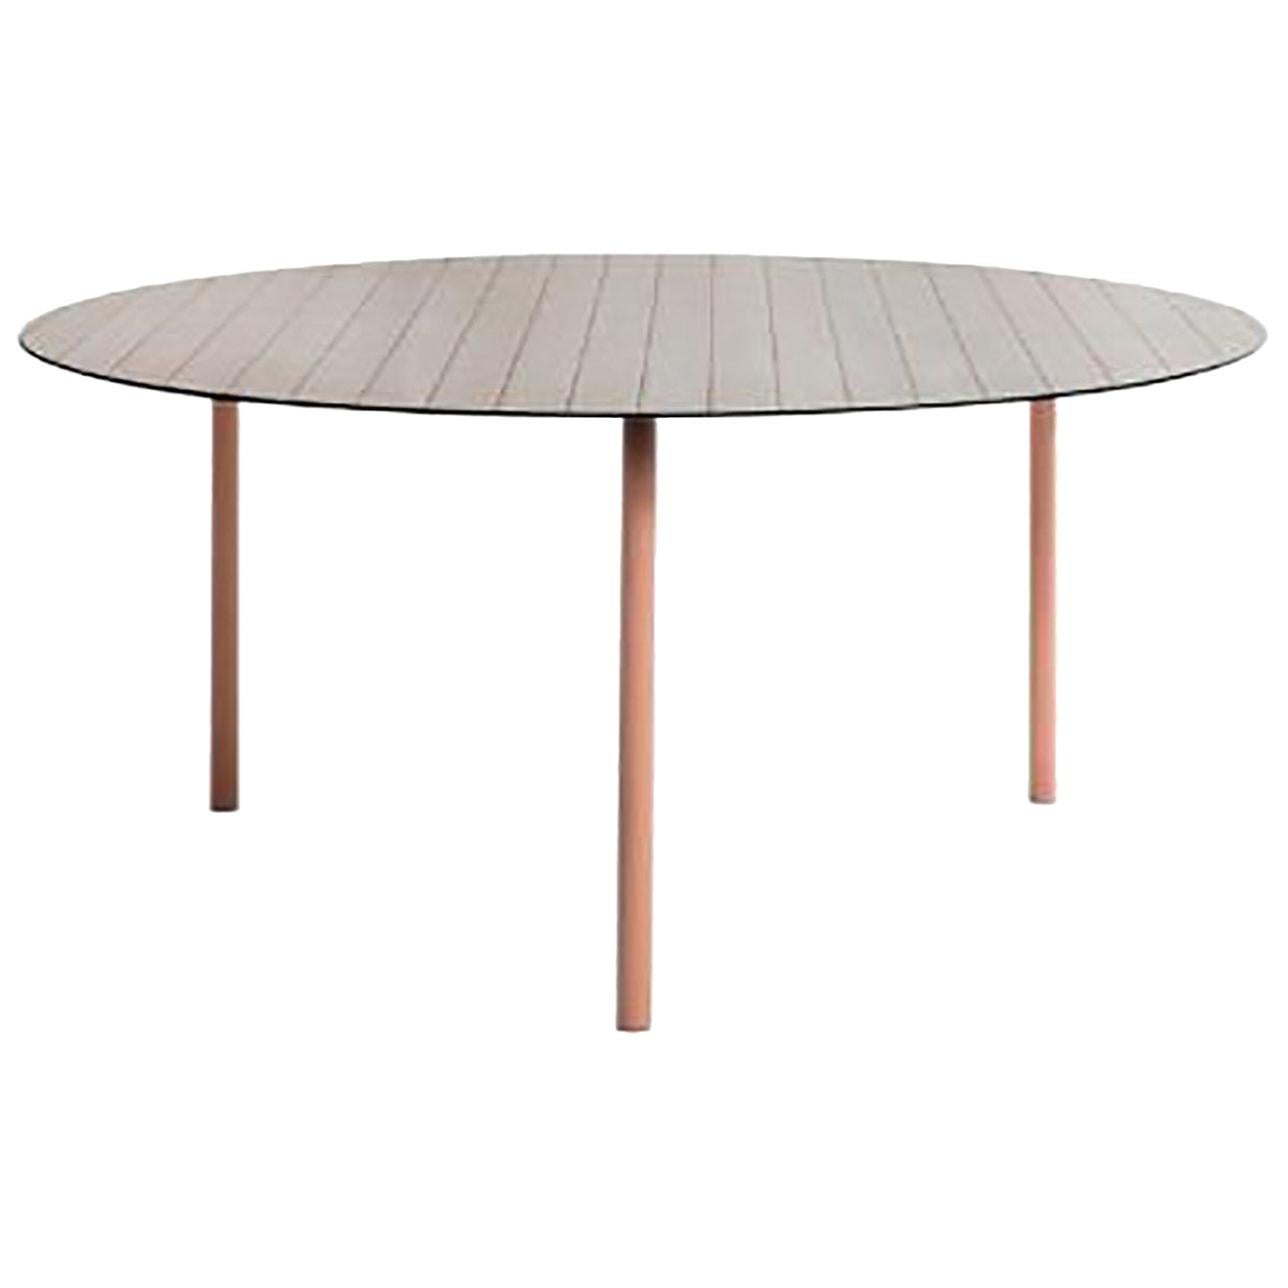 Table contemporaine Check Surface Texture imprimée:: structure inspirée du Bauhaus